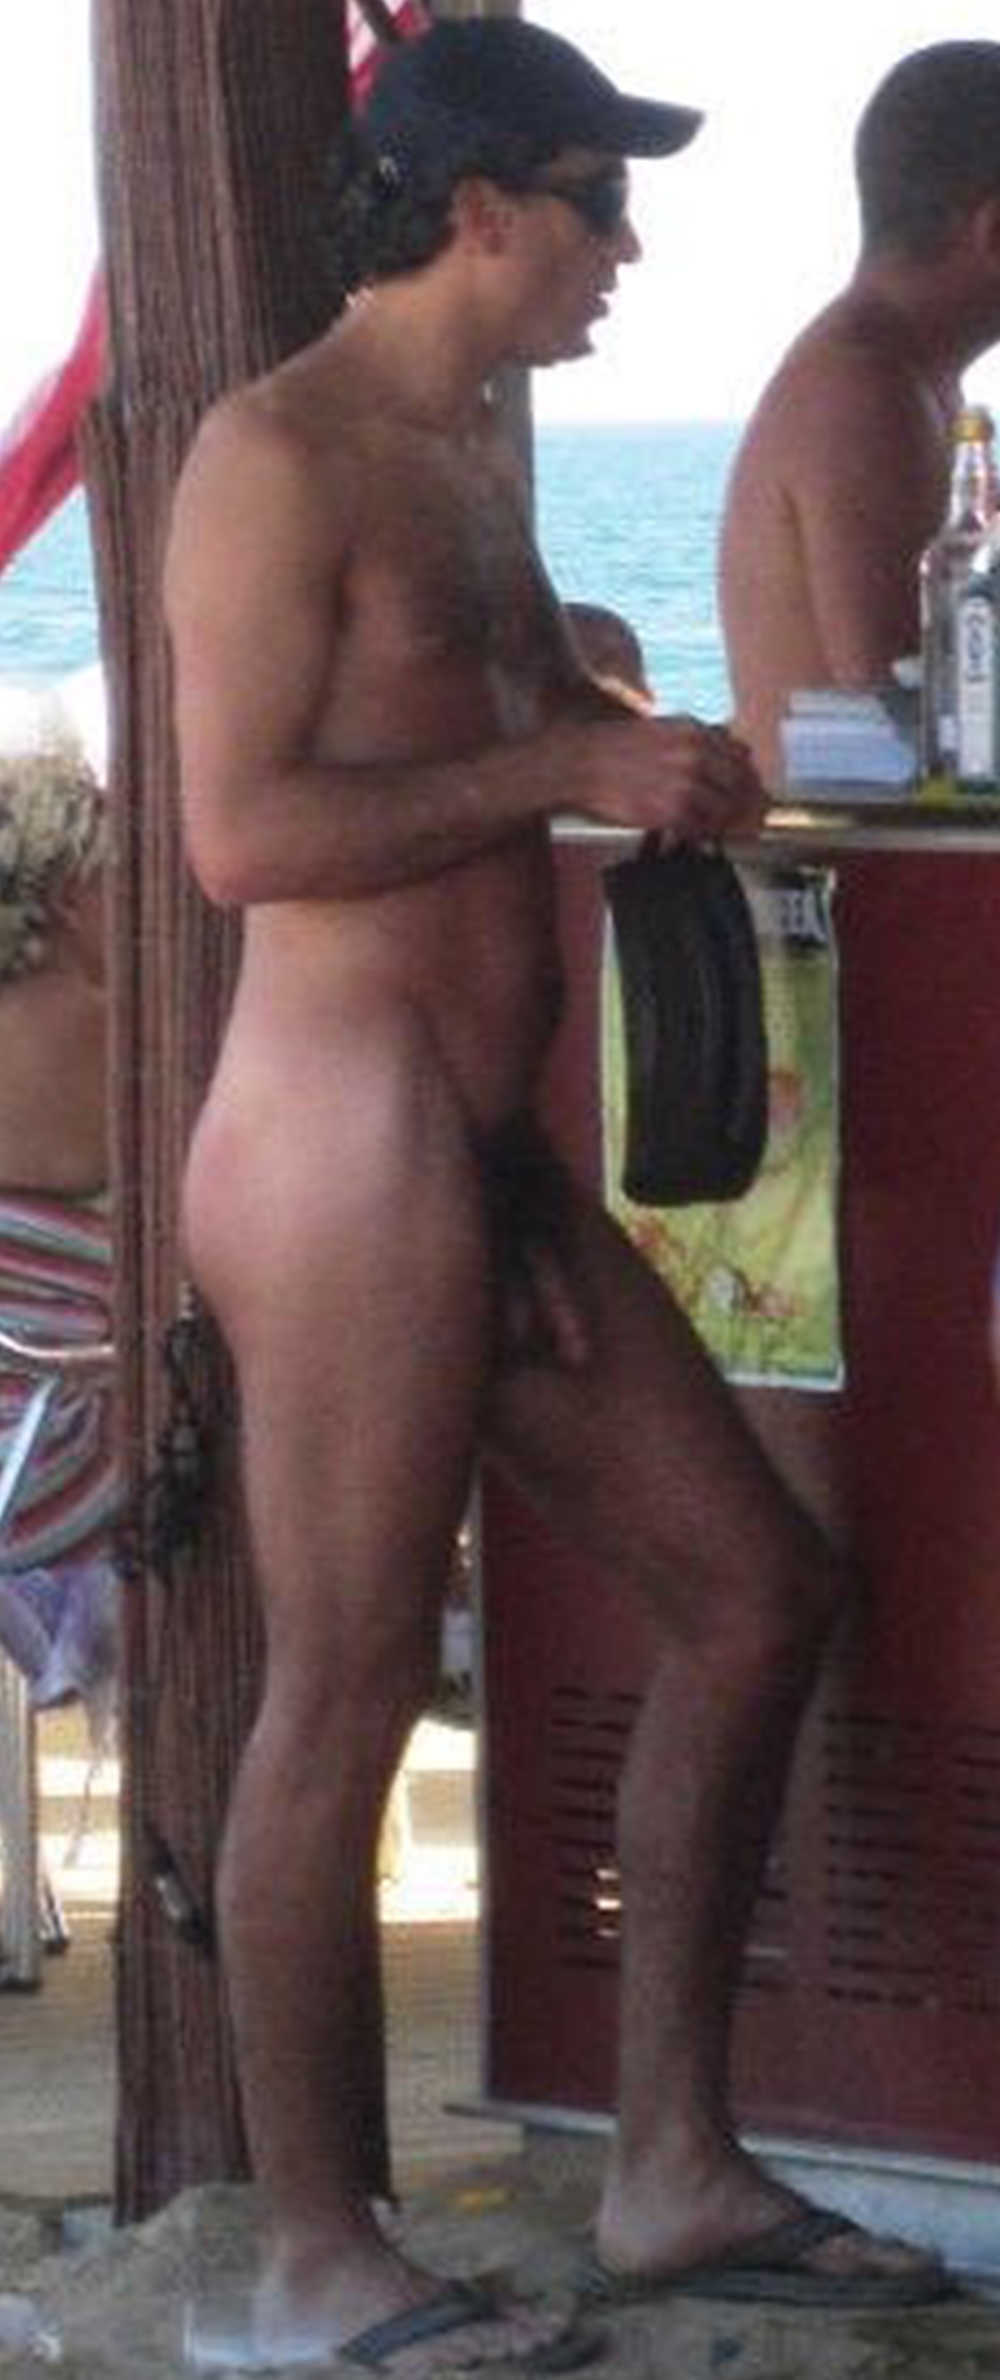 nudist man caught by hidden camera